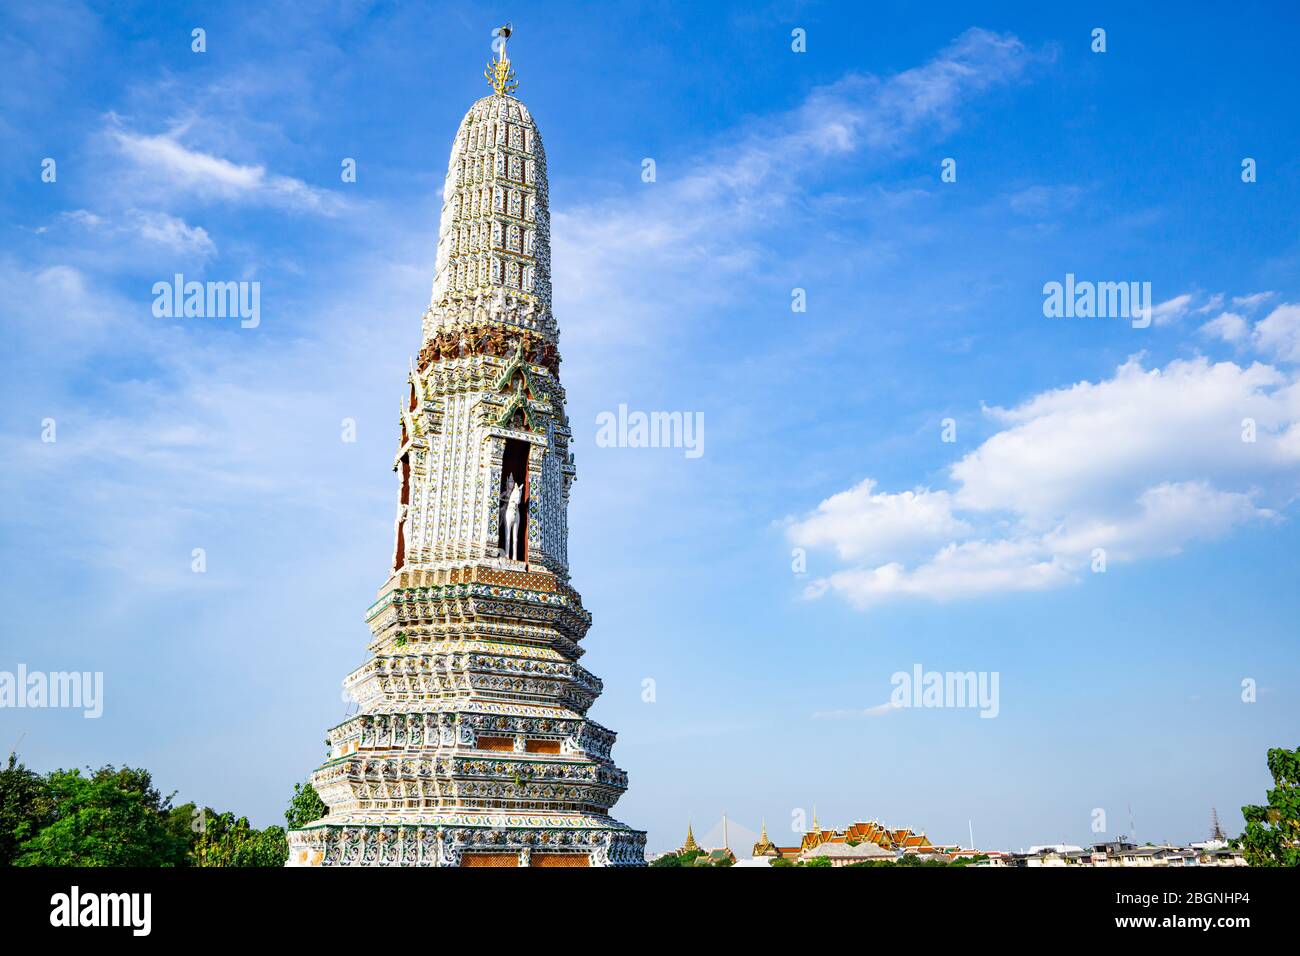 El templo de Arun fue concebido por King en 1768, es un hito muy conocido en Tailandia. Este templo budista está abierto al público, millones de turistas vienen Foto de stock